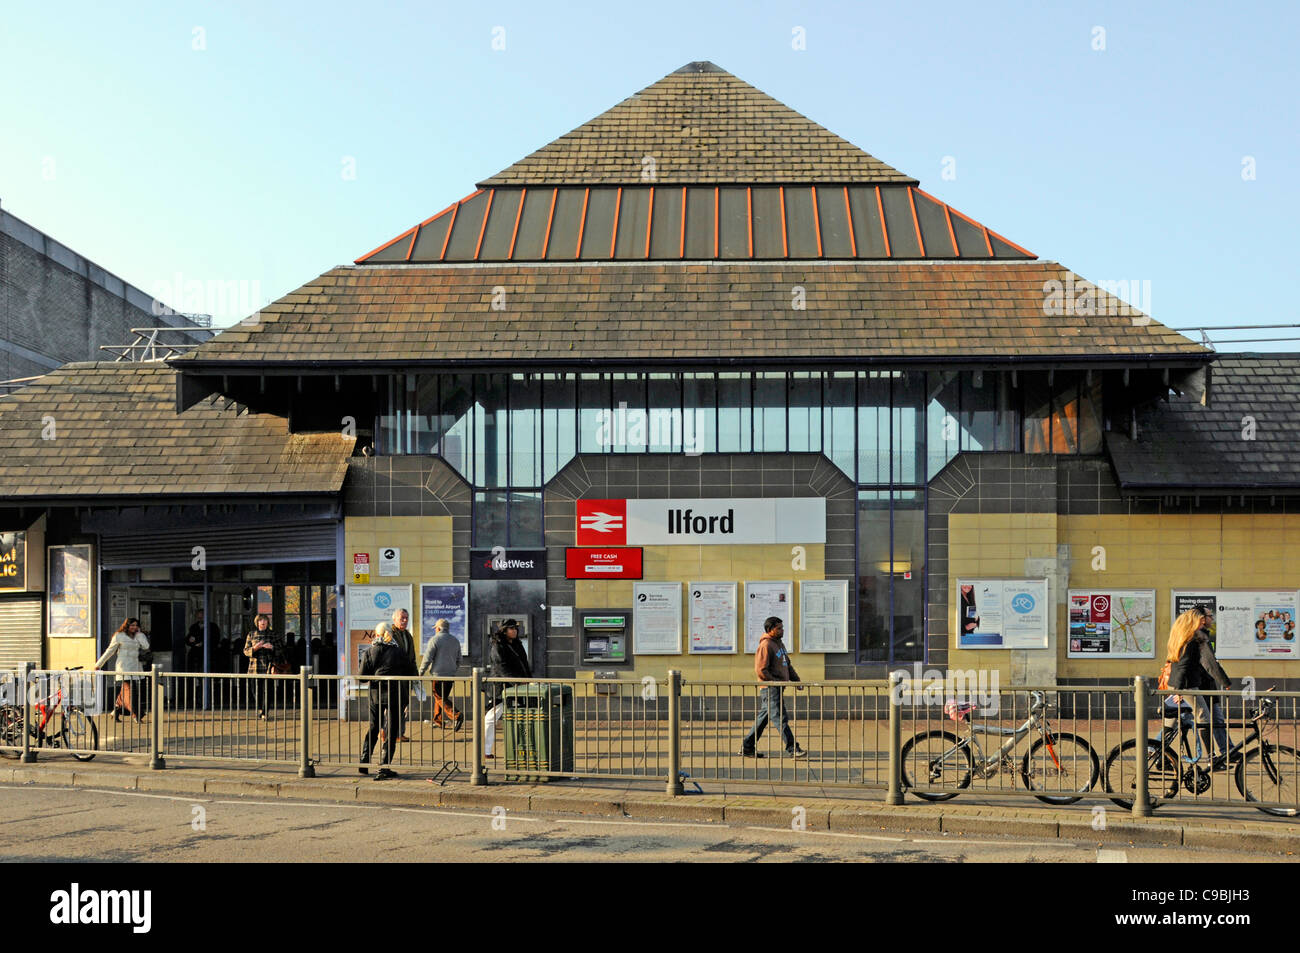 Gare ferroviaire d'Ilford façade transport public & scène de rue personnes devant l'entrée Redbridge East London Angleterre Royaume-Uni (Ilford était dans l'Essex) Banque D'Images